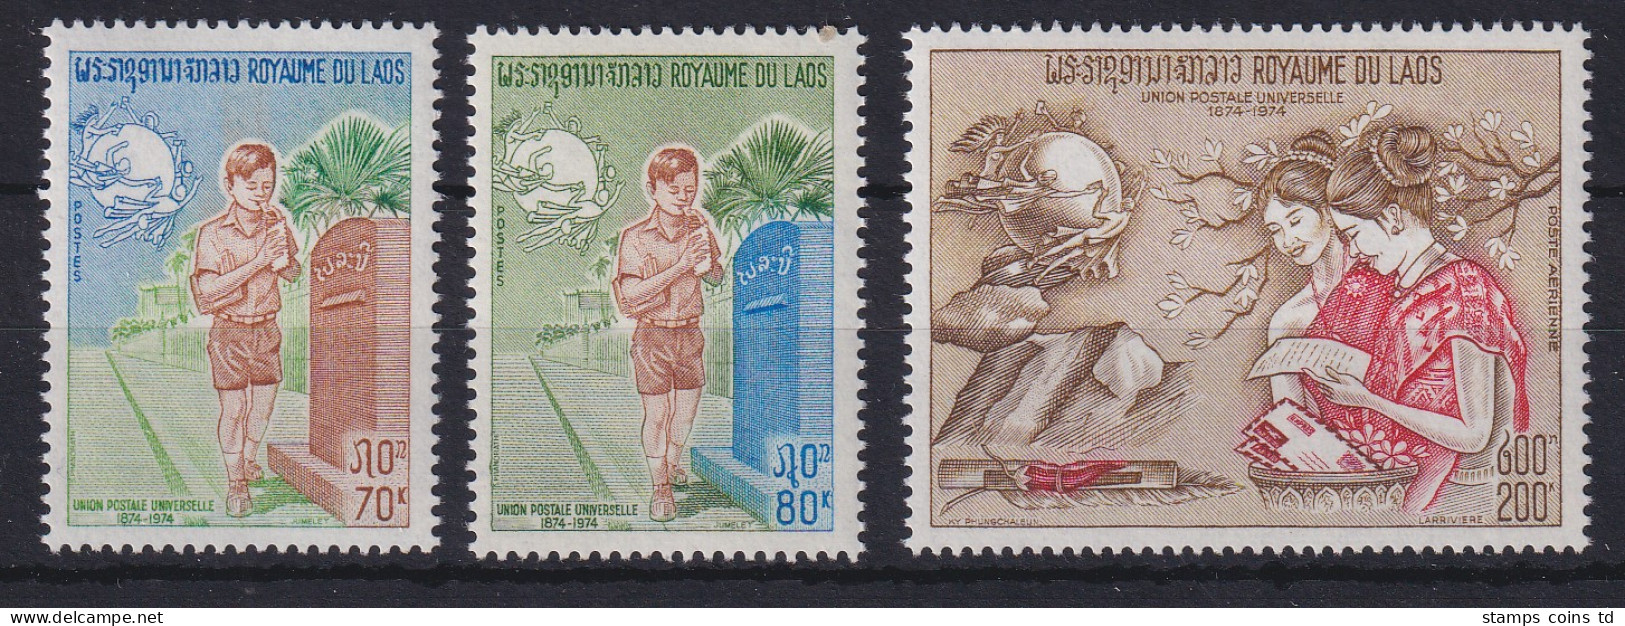 Laos 1974 100 Jahre Weltpostverein UPU Mi.-Nr. 376-378 Postfrisch **  - Laos